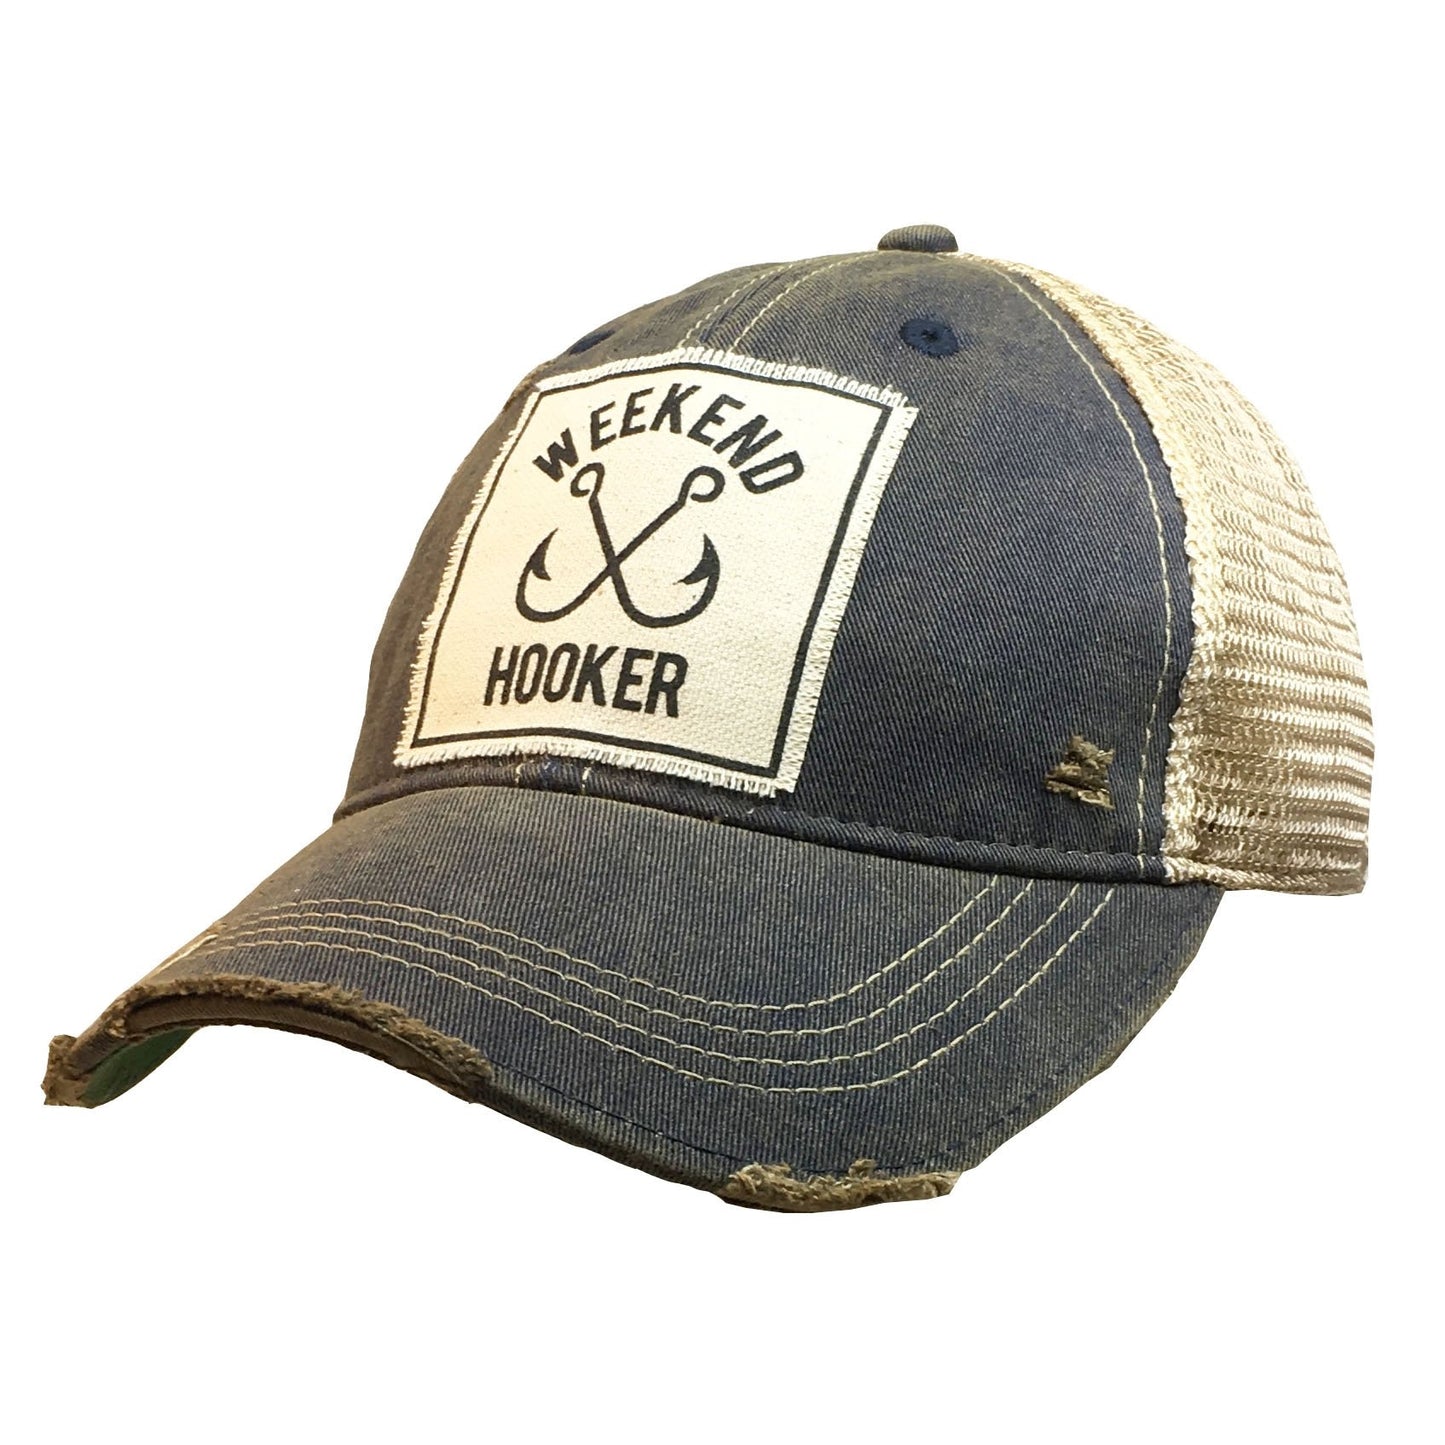 Weekend Hooker Trucker Hat- Black